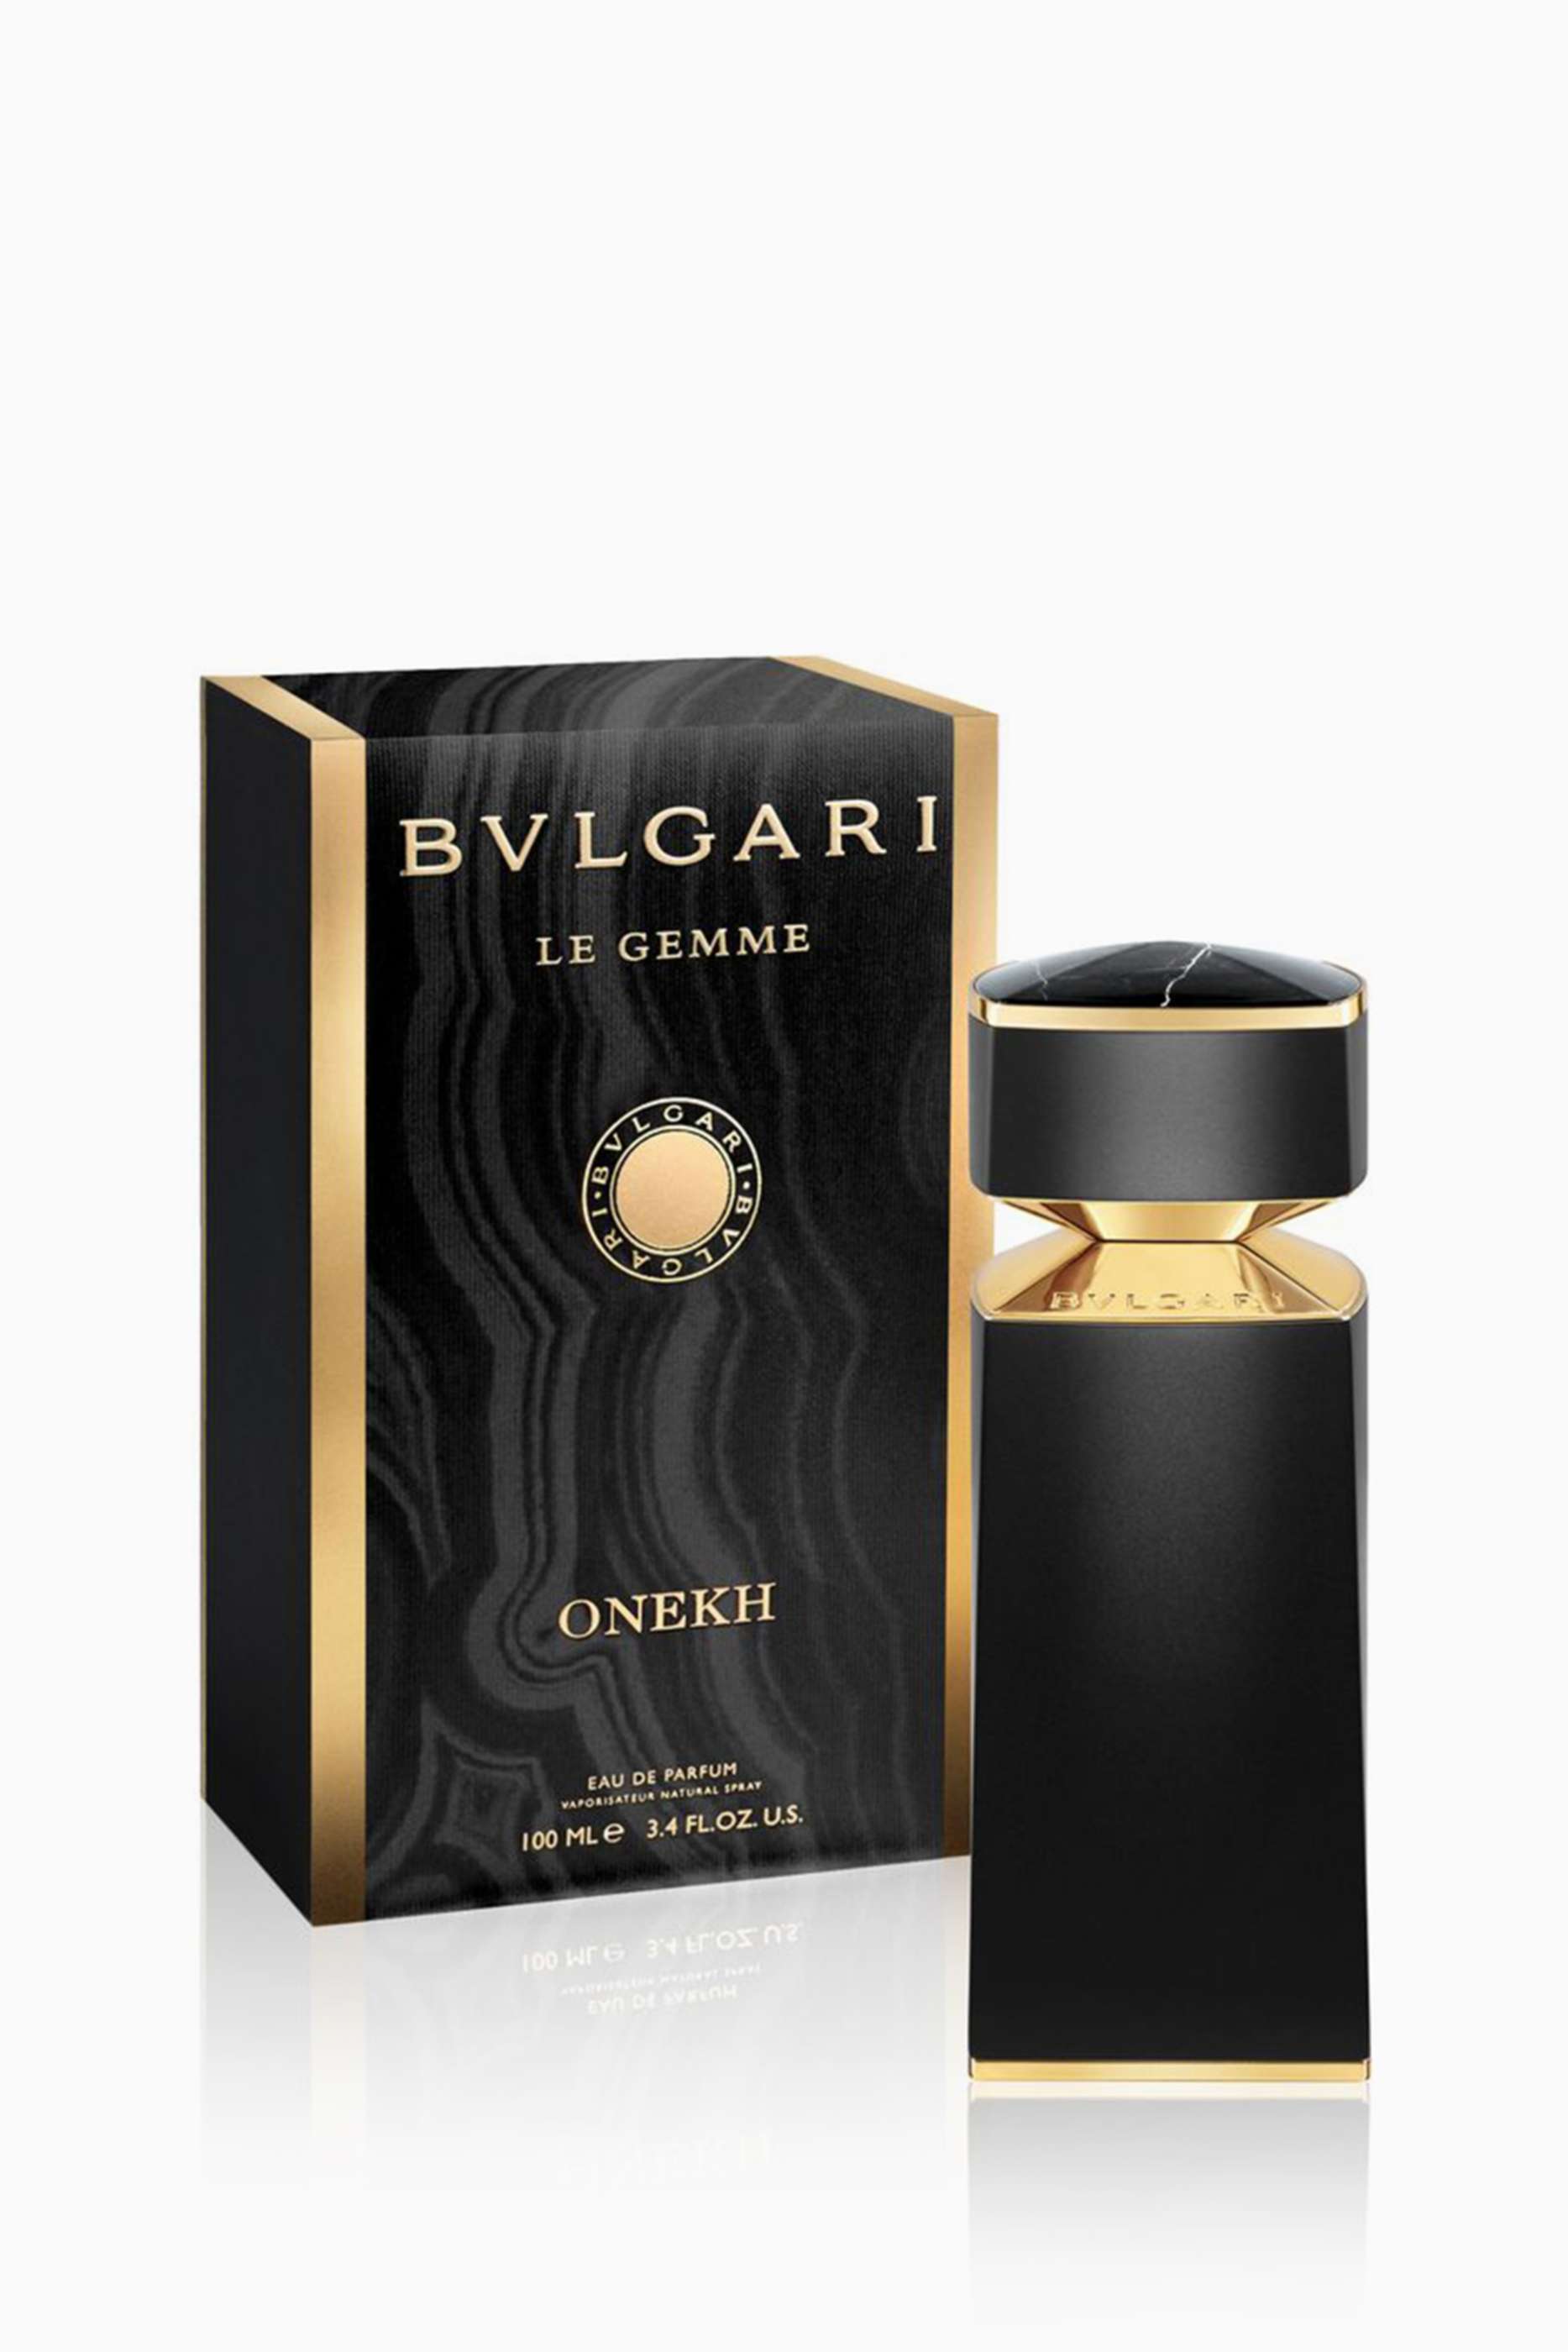 bvlgari onekh perfume